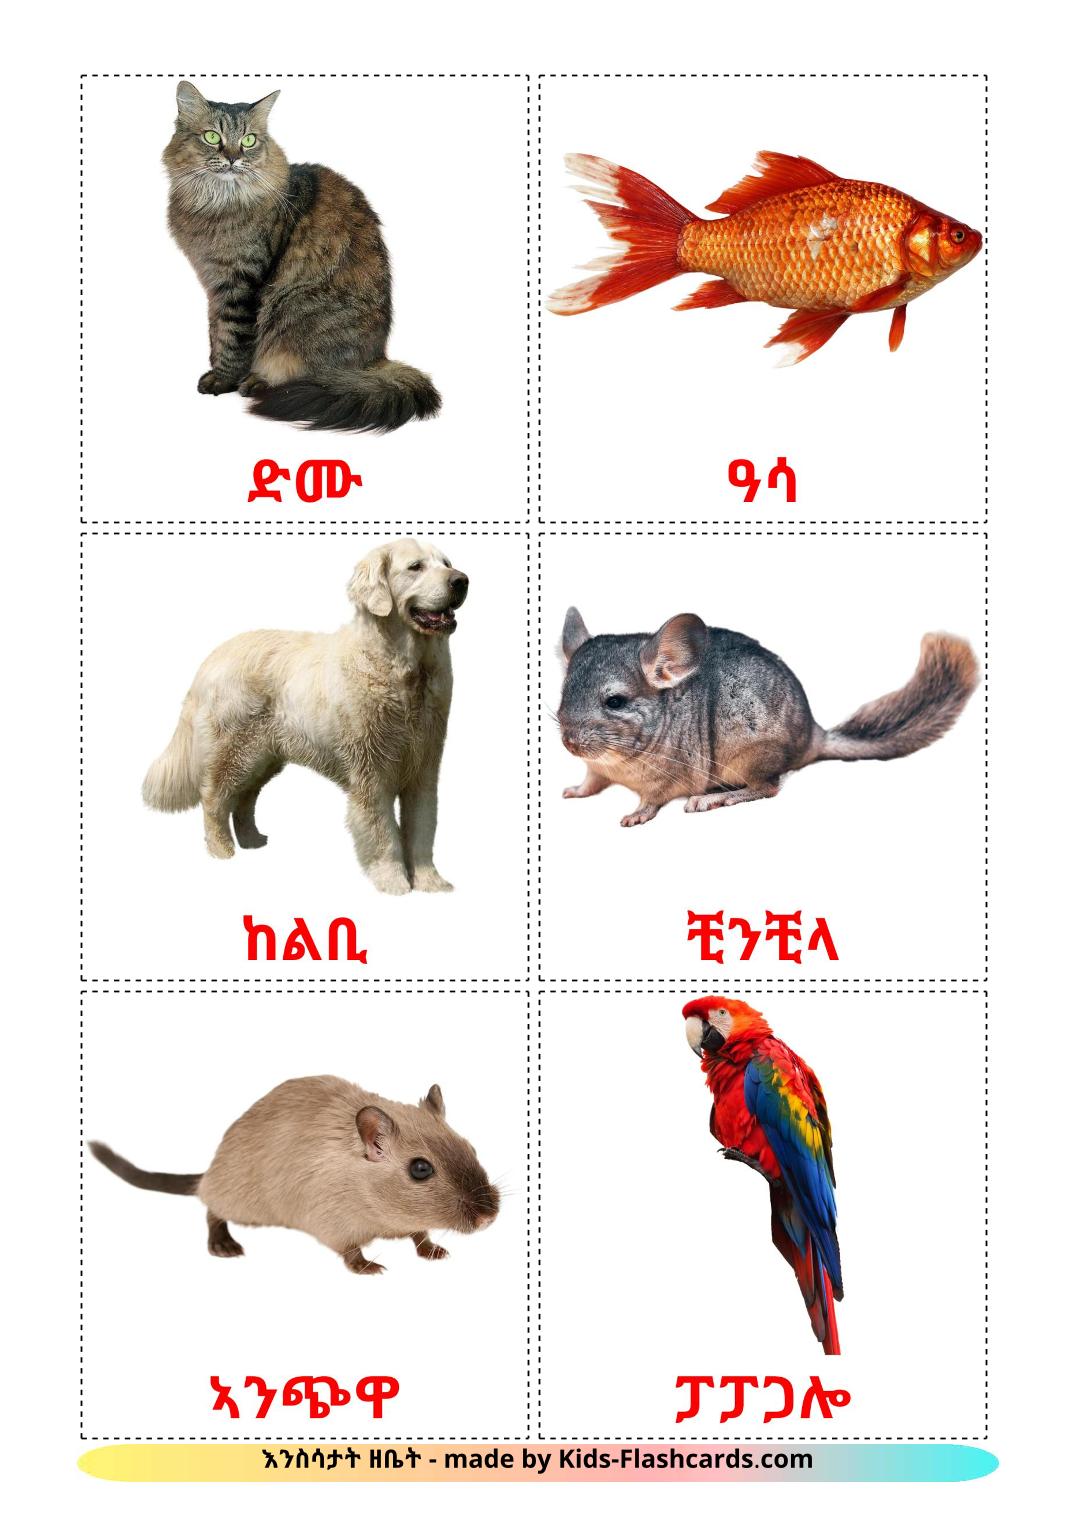 Animais Domésticos  - 10 Flashcards tigrigna(eritreia)es gratuitos para impressão